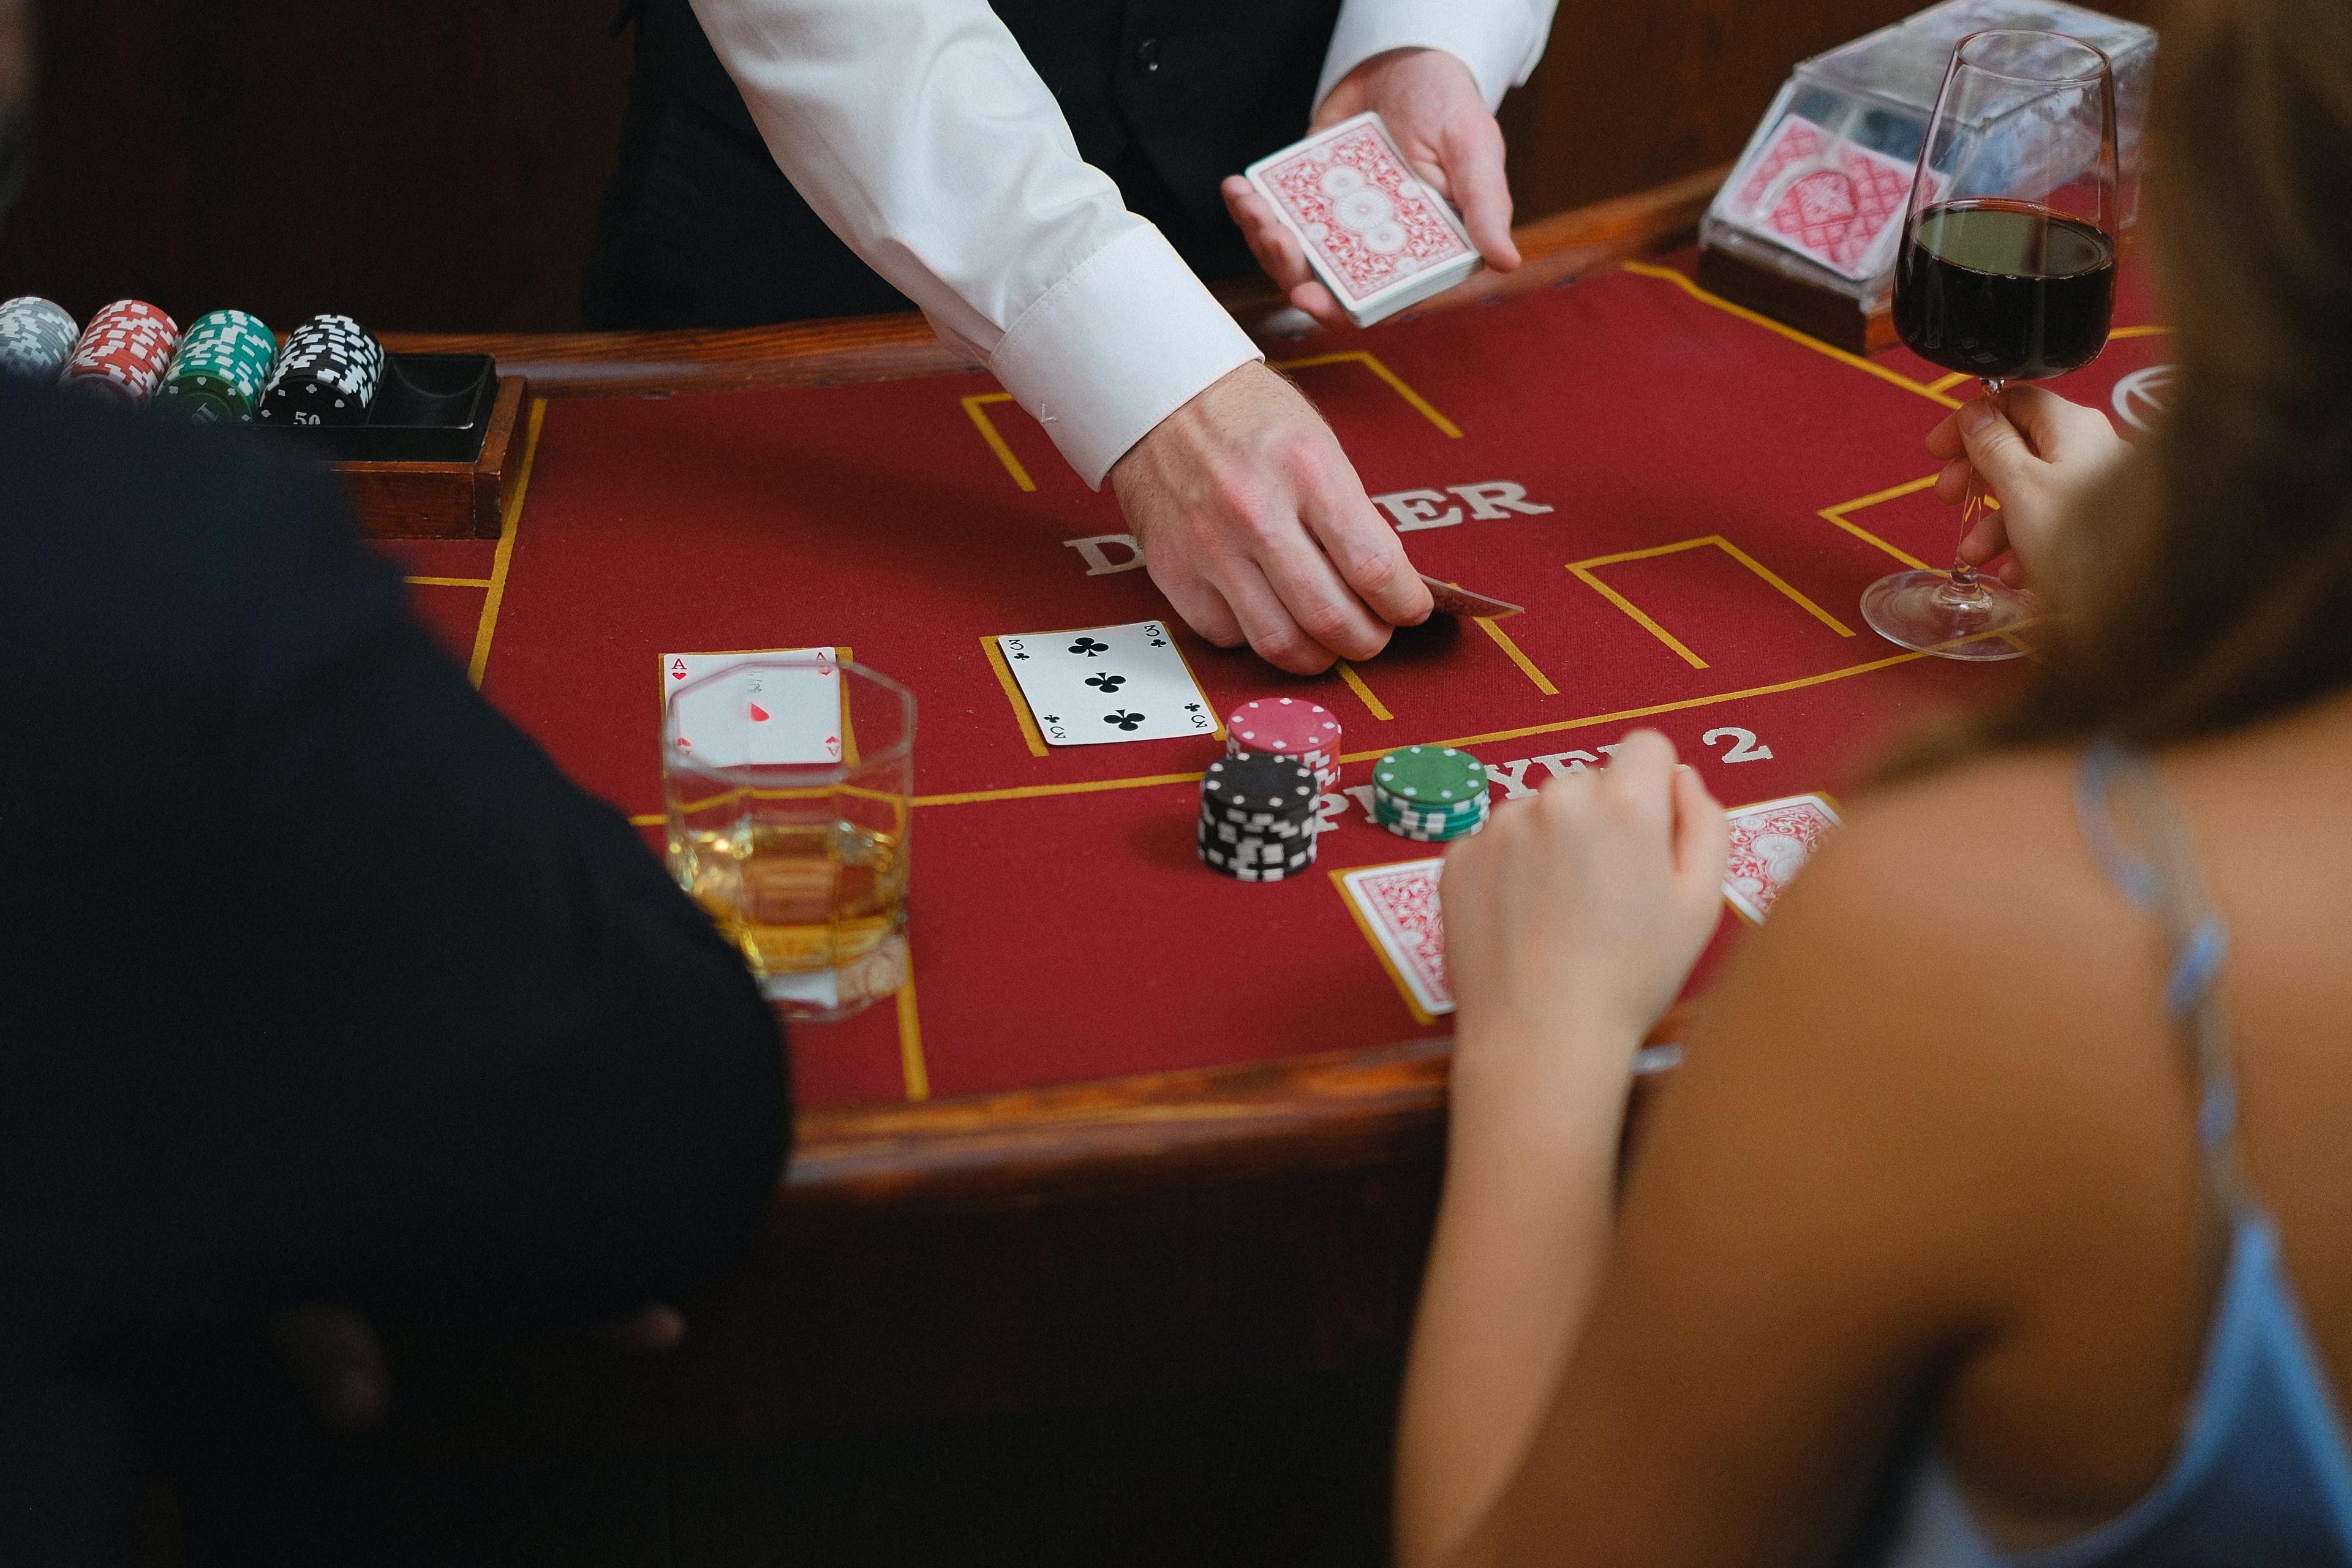 Pokerz online poker digital jogos de azar na internet com dinheiro real,  torneio de apostador profissional